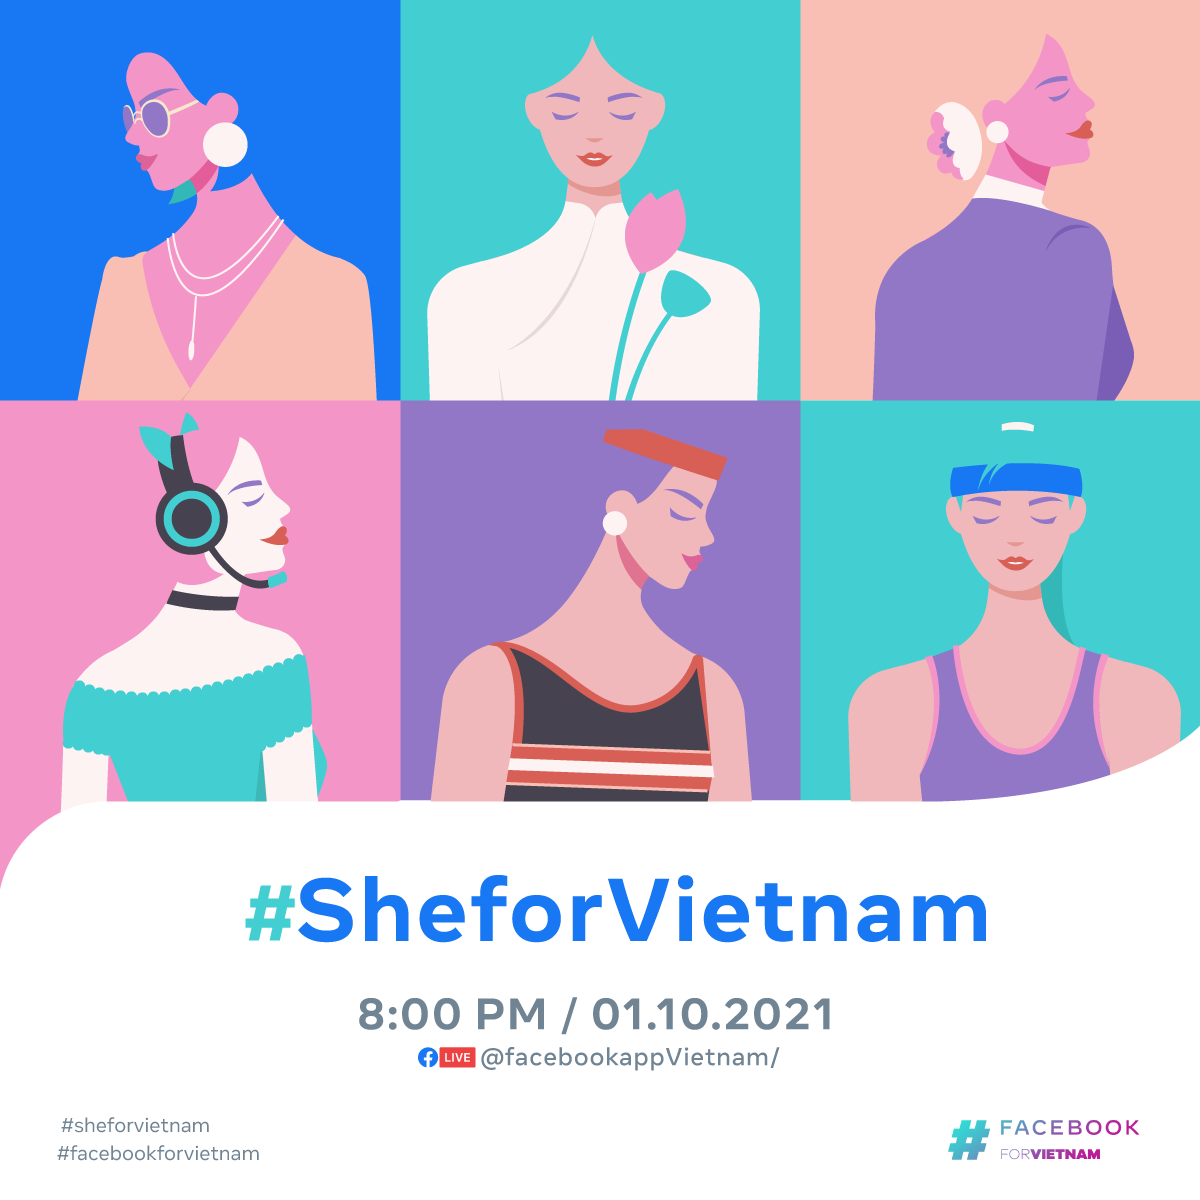 Facebook thực hiện chuỗi hoạt động hỗ trợ và trao quyền cho phụ nữ Việt Nam #SheforVietnam trong tháng tôn vinh phụ nữ - ảnh 1